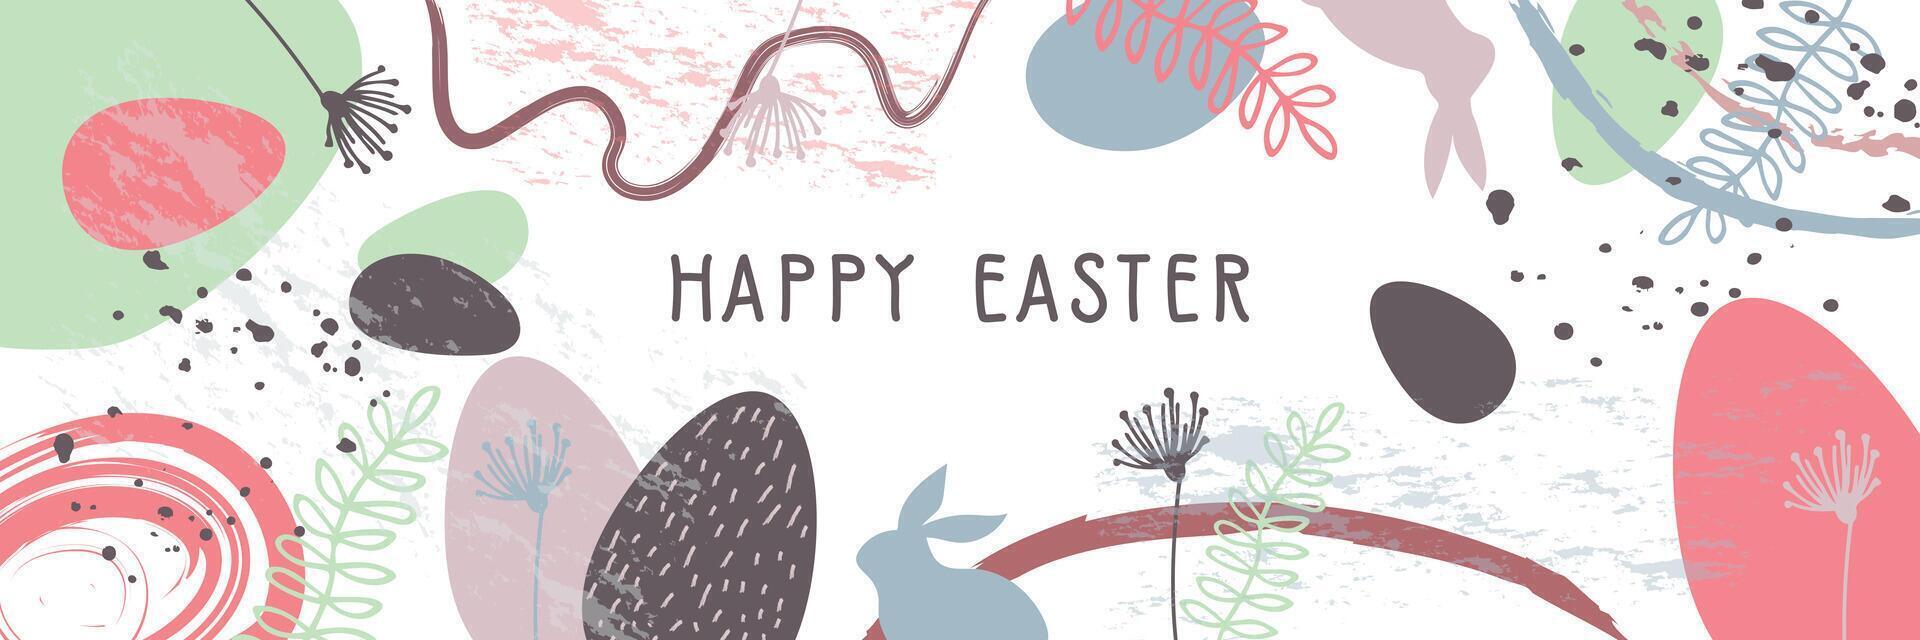 de inskrift Lycklig påsk på ett abstrakt bakgrund. påsk baner med kaniner, Semester ägg och blommor. vektor